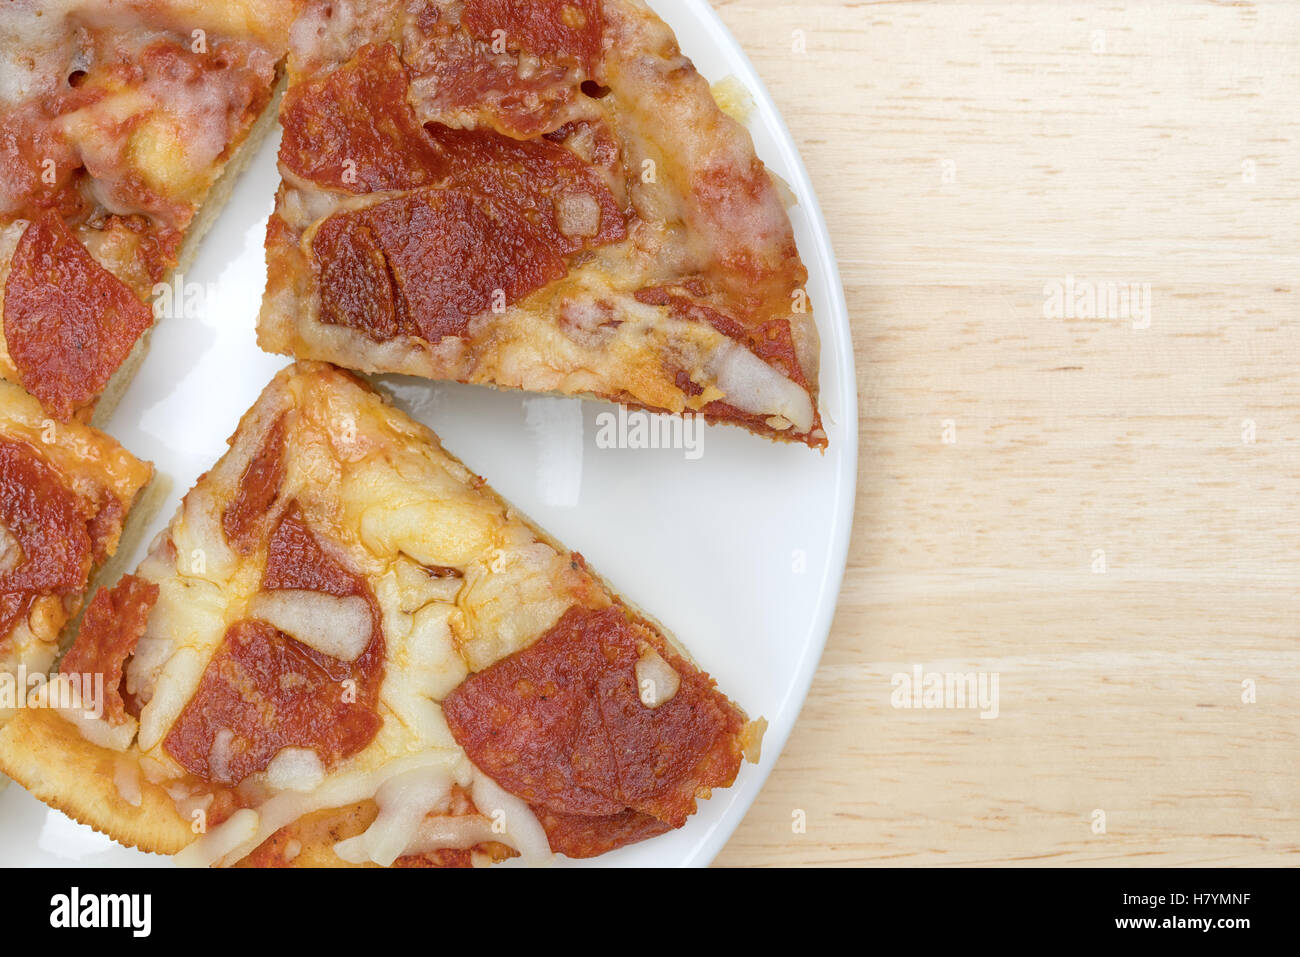 Enge Draufsicht von mehreren Mikrowelle persönliche Größe Peperoni Pizza Scheiben isoliert auf einem weißen Teller oben auf einem Holztisch. Stockfoto